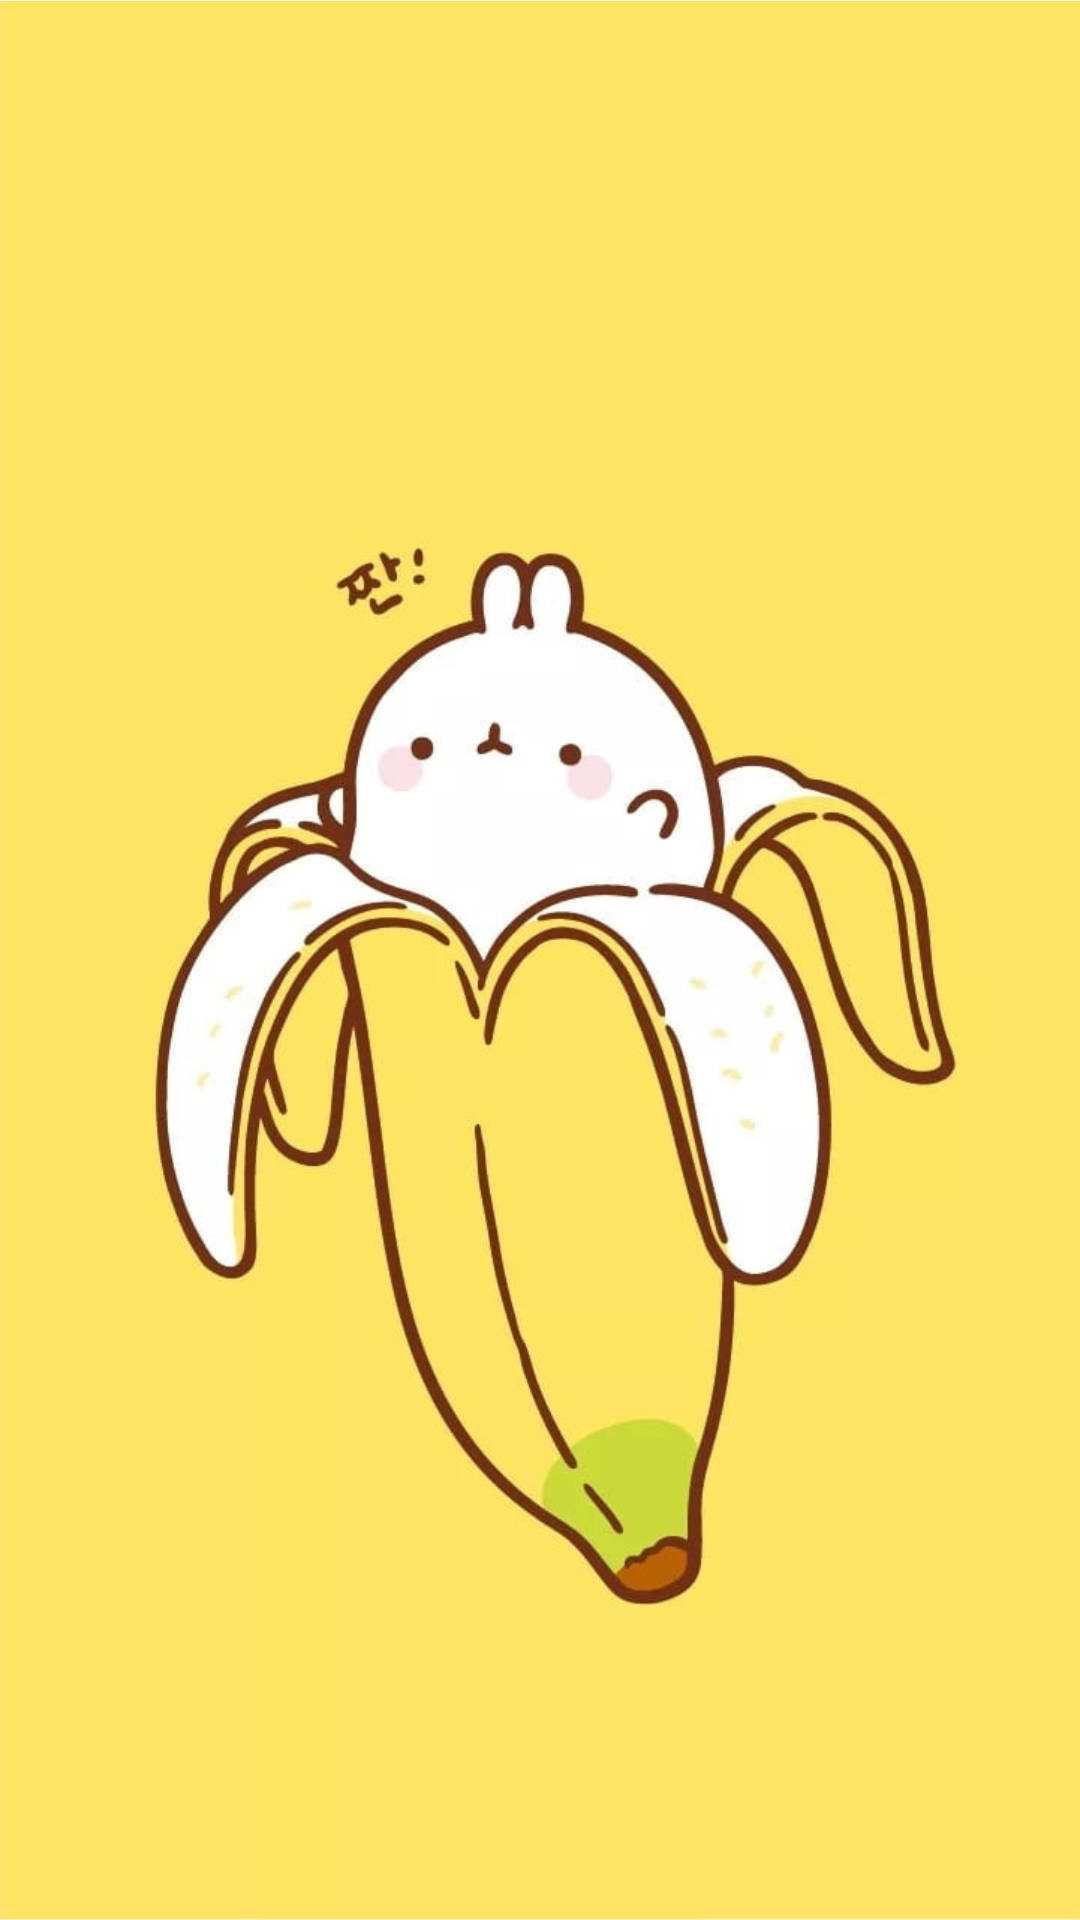 Peel – Sød kanin inde i en bananskal Wallpaper